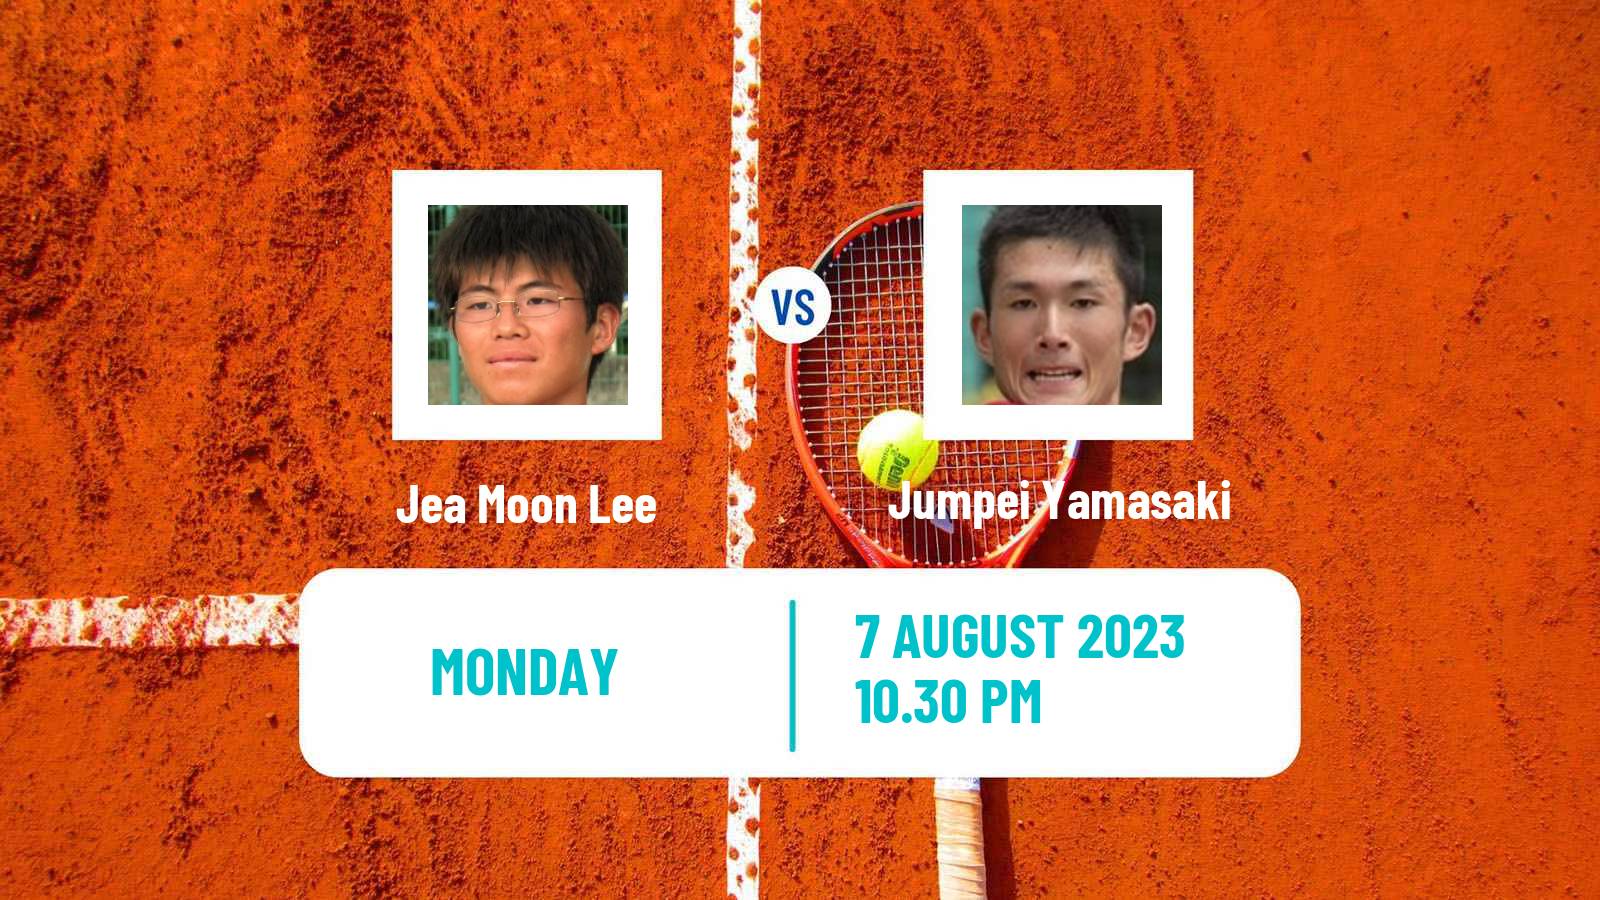 Tennis ITF M25 Jakarta 6 Men Jea Moon Lee - Jumpei Yamasaki